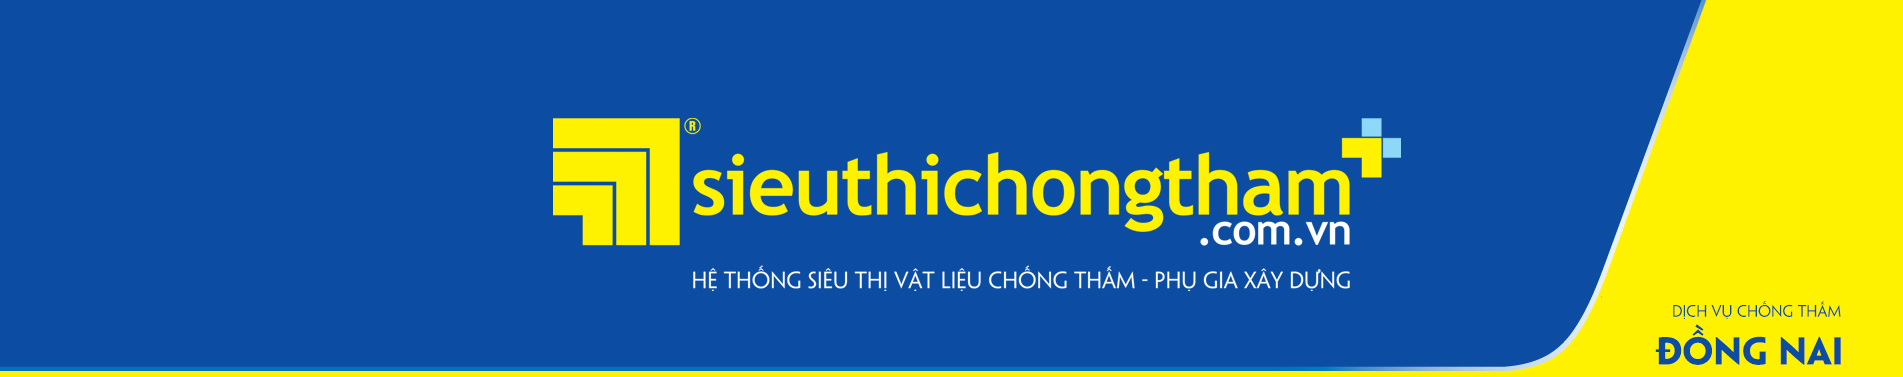 Dich Vu Chong Tham Dong Nai